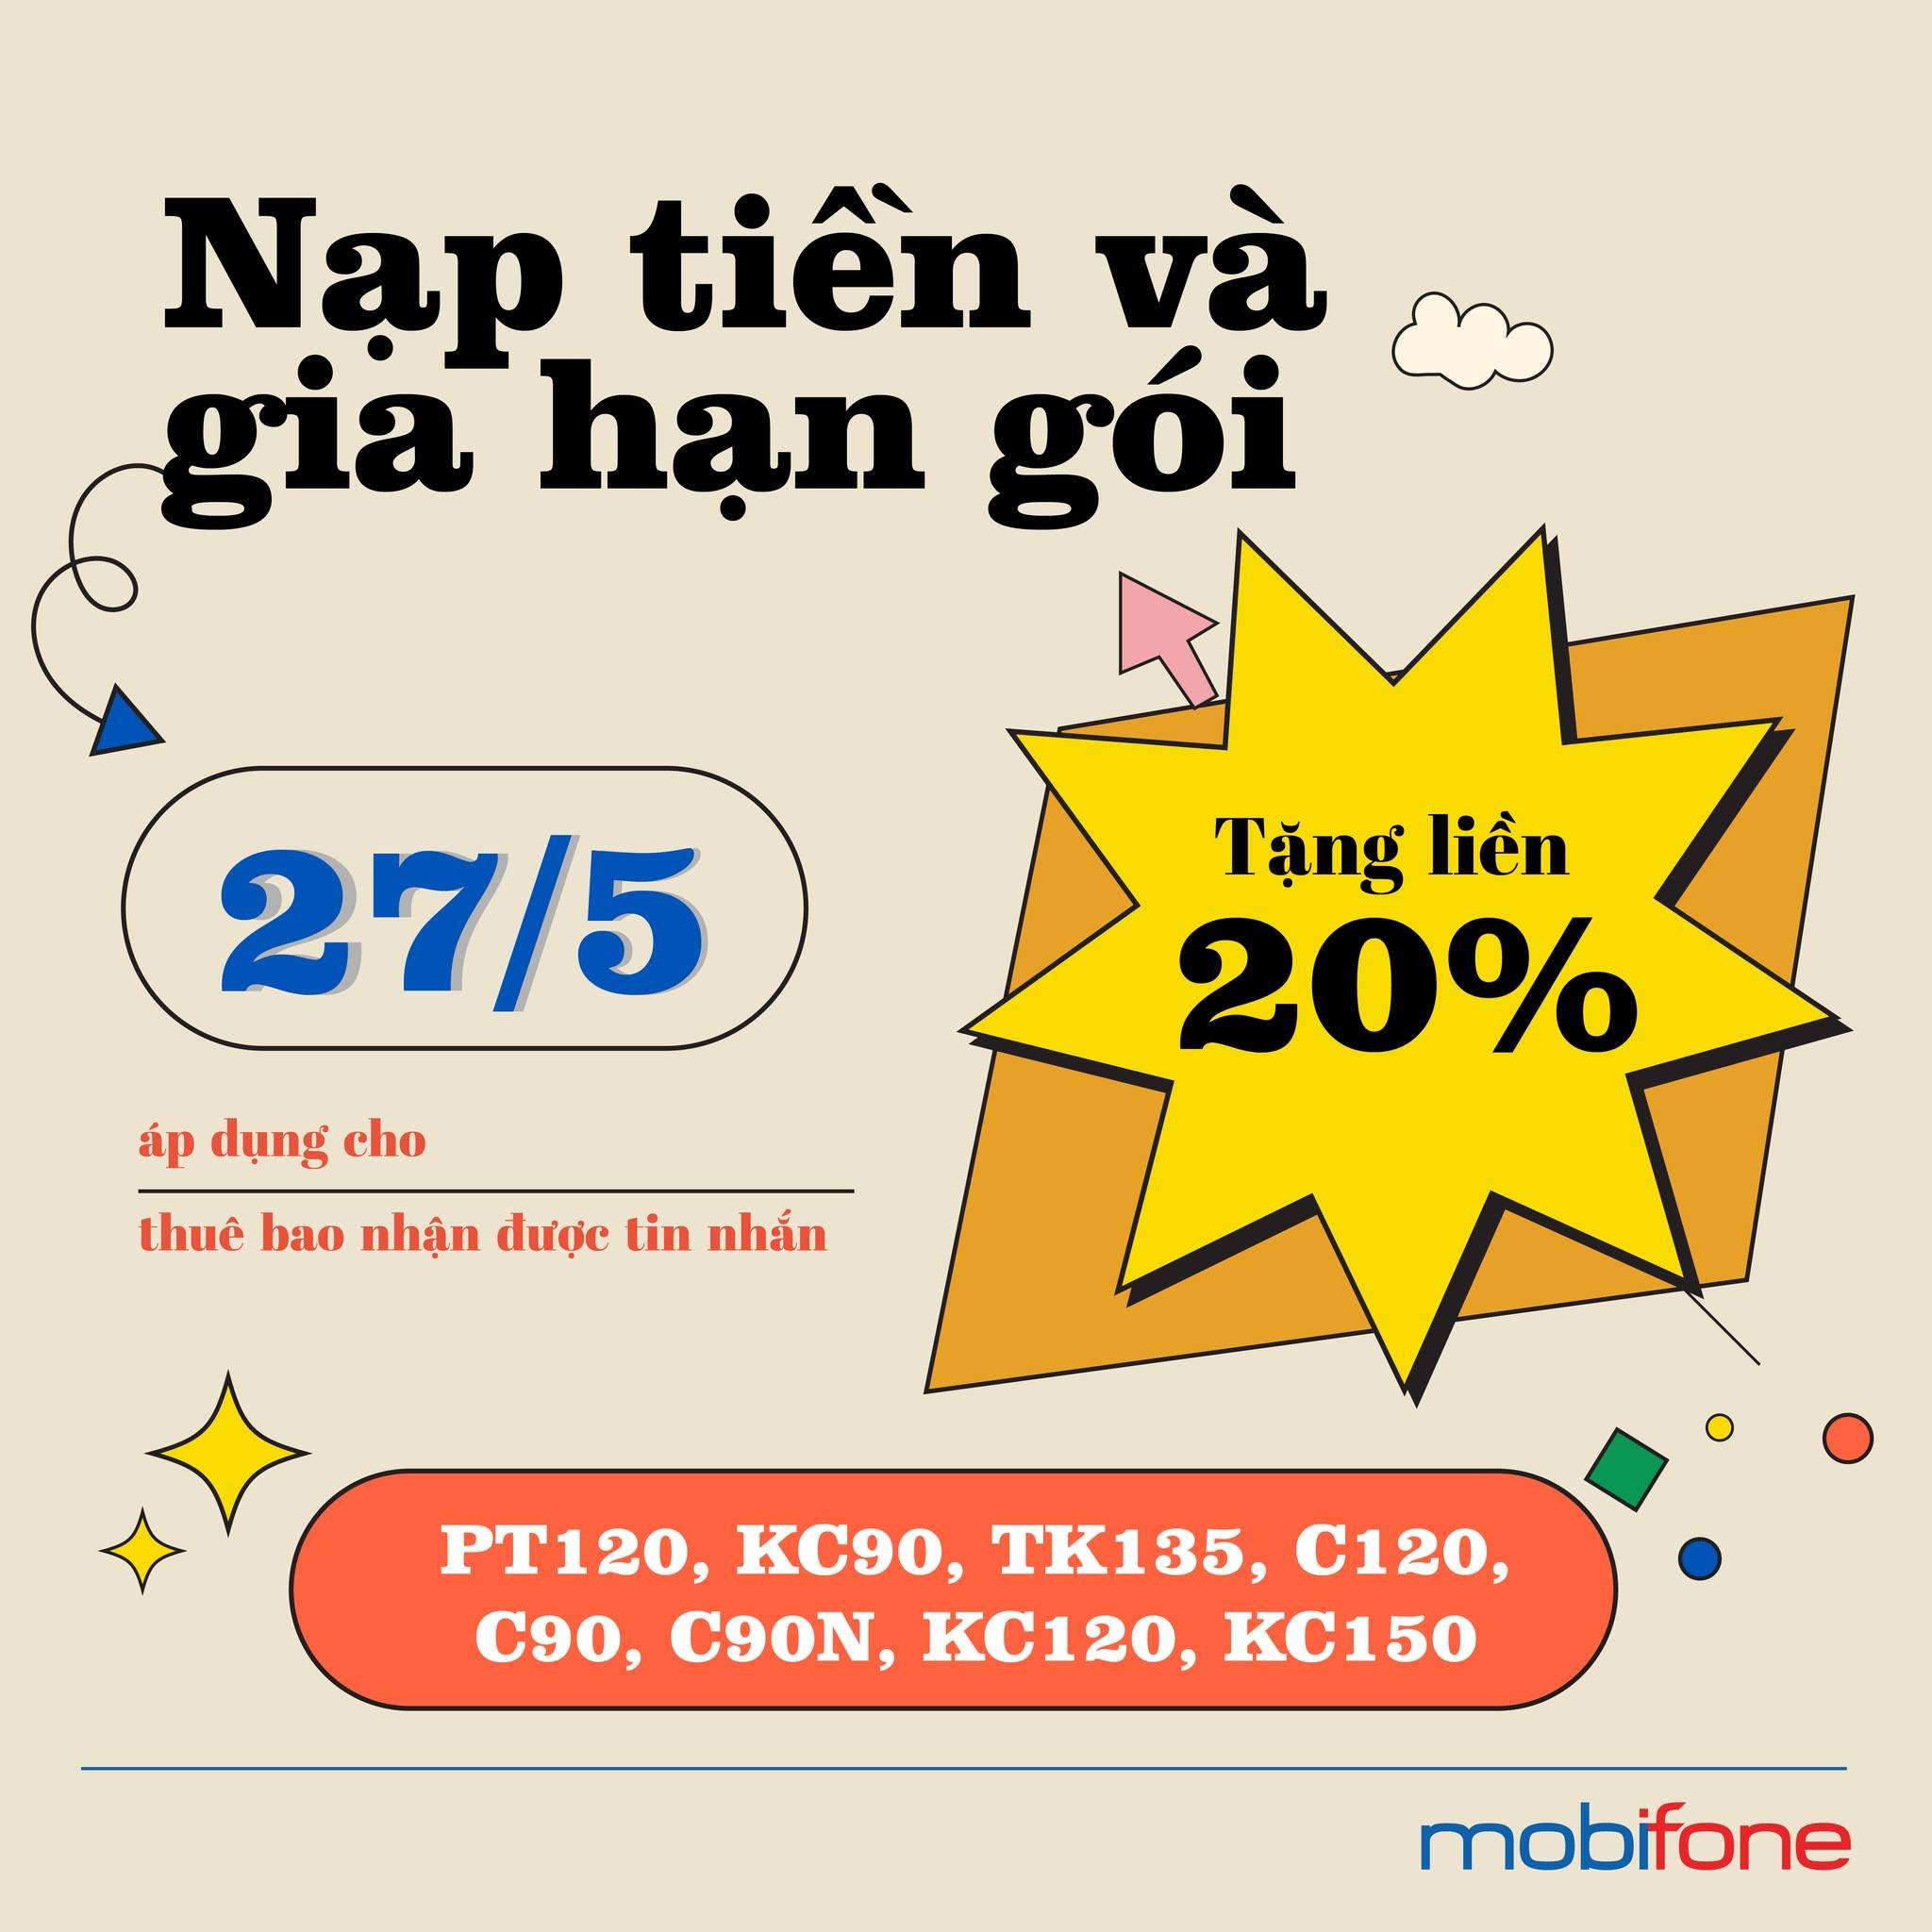 MobiFone khuyến mãi 20% nạp tiền trả trước trong ngày 27/05